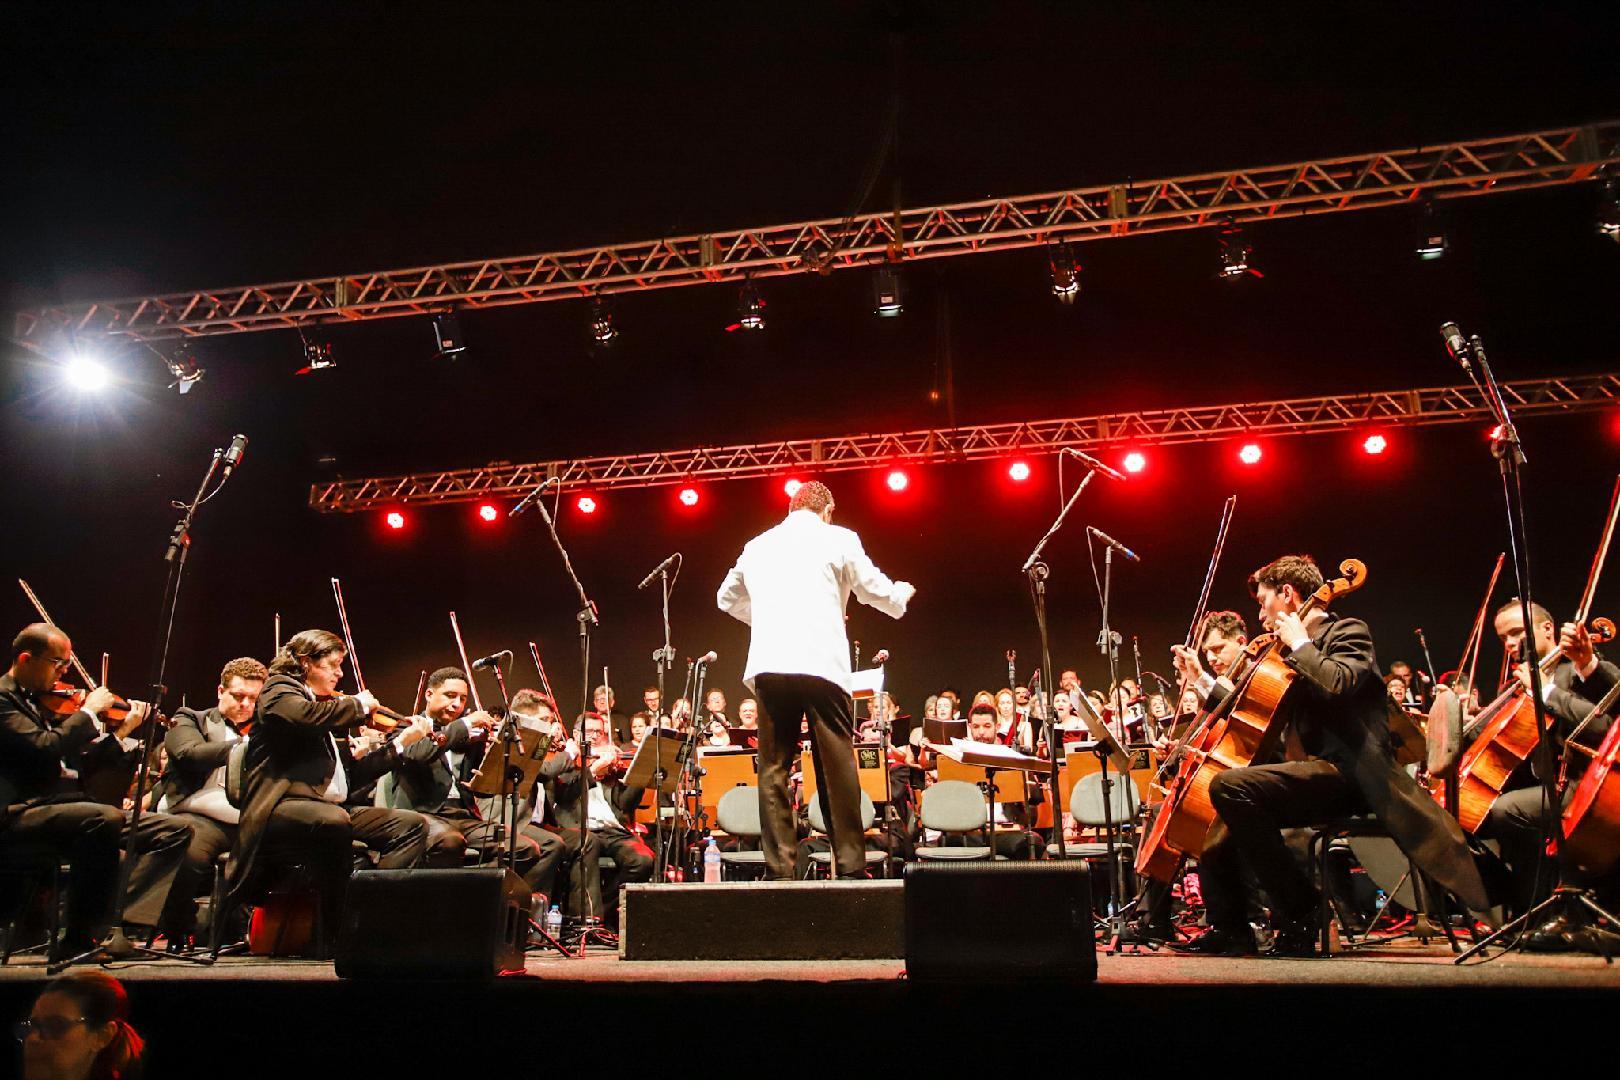 A Orquestra Sinfônica de Ribeirão Preto completou um século de existência em 2022. E para marcar seu aniversário de 100 anos, realizou um concerto histórico no mês de outubro, na Praça Carlos Gomes, sob regência do maestro titular Reginaldo Nascimento.